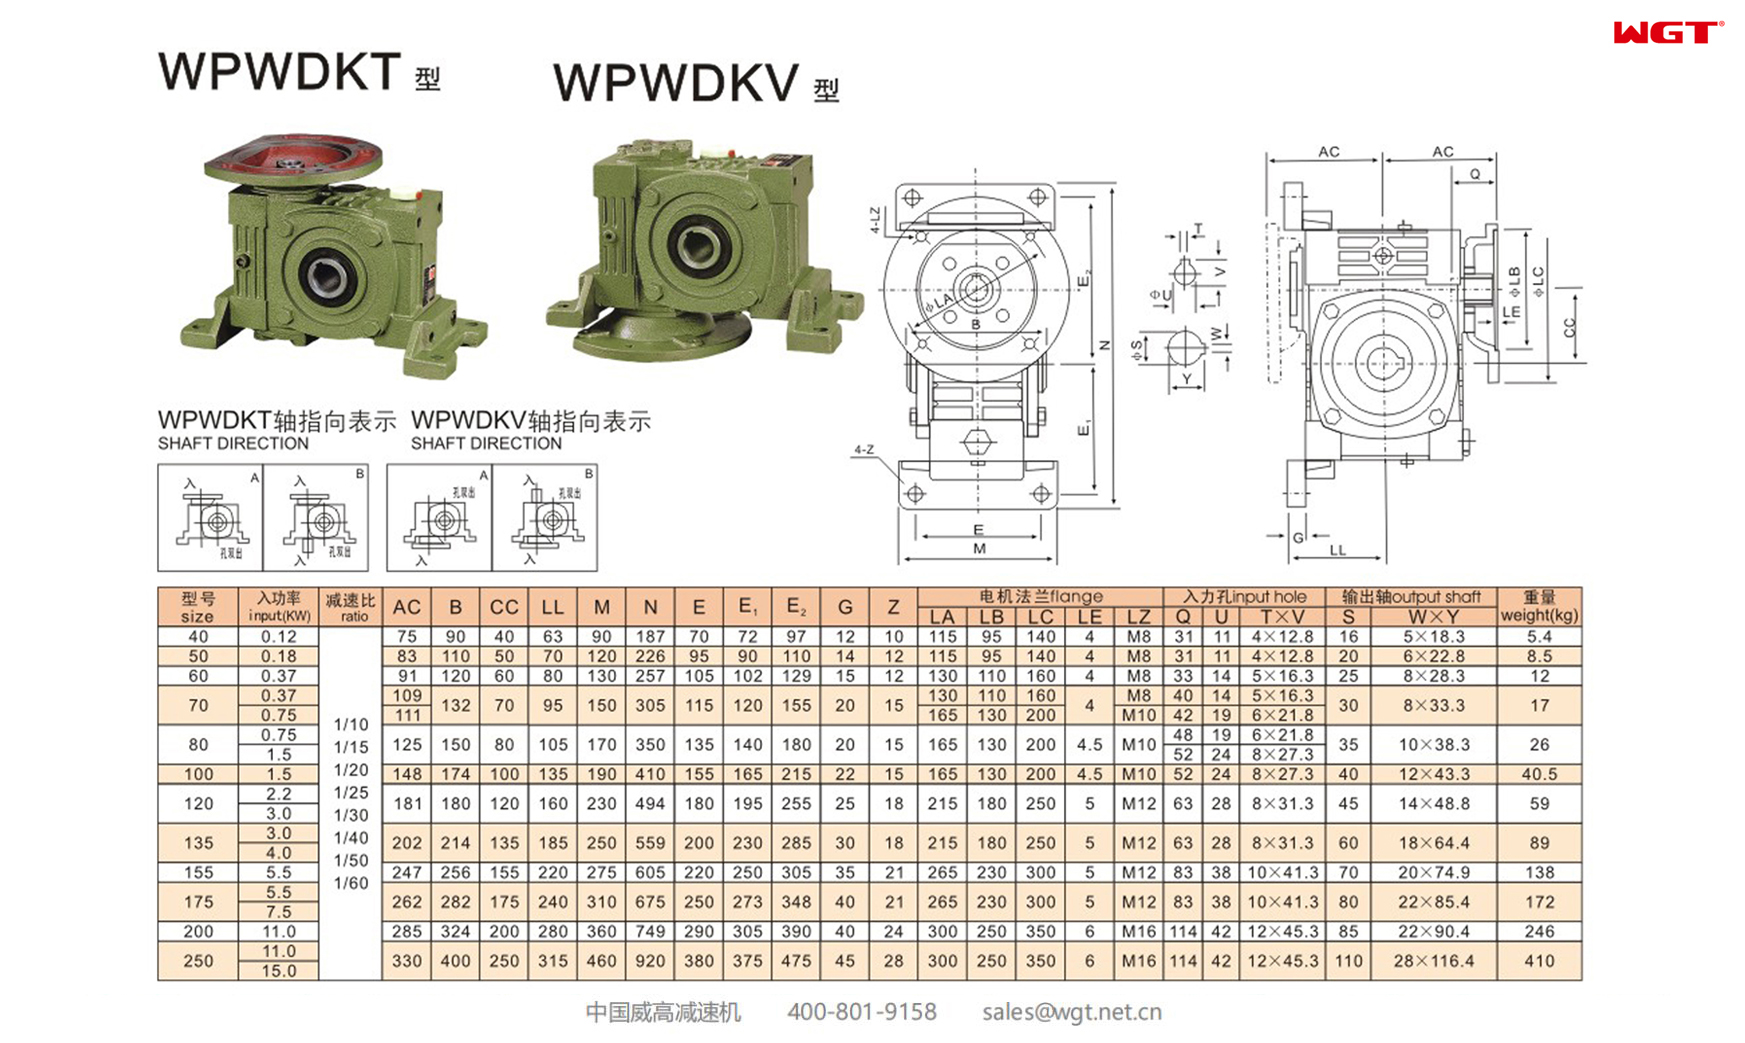 WPWDKT WPWDKV200 Worm Gear Reducer Universal Reducer